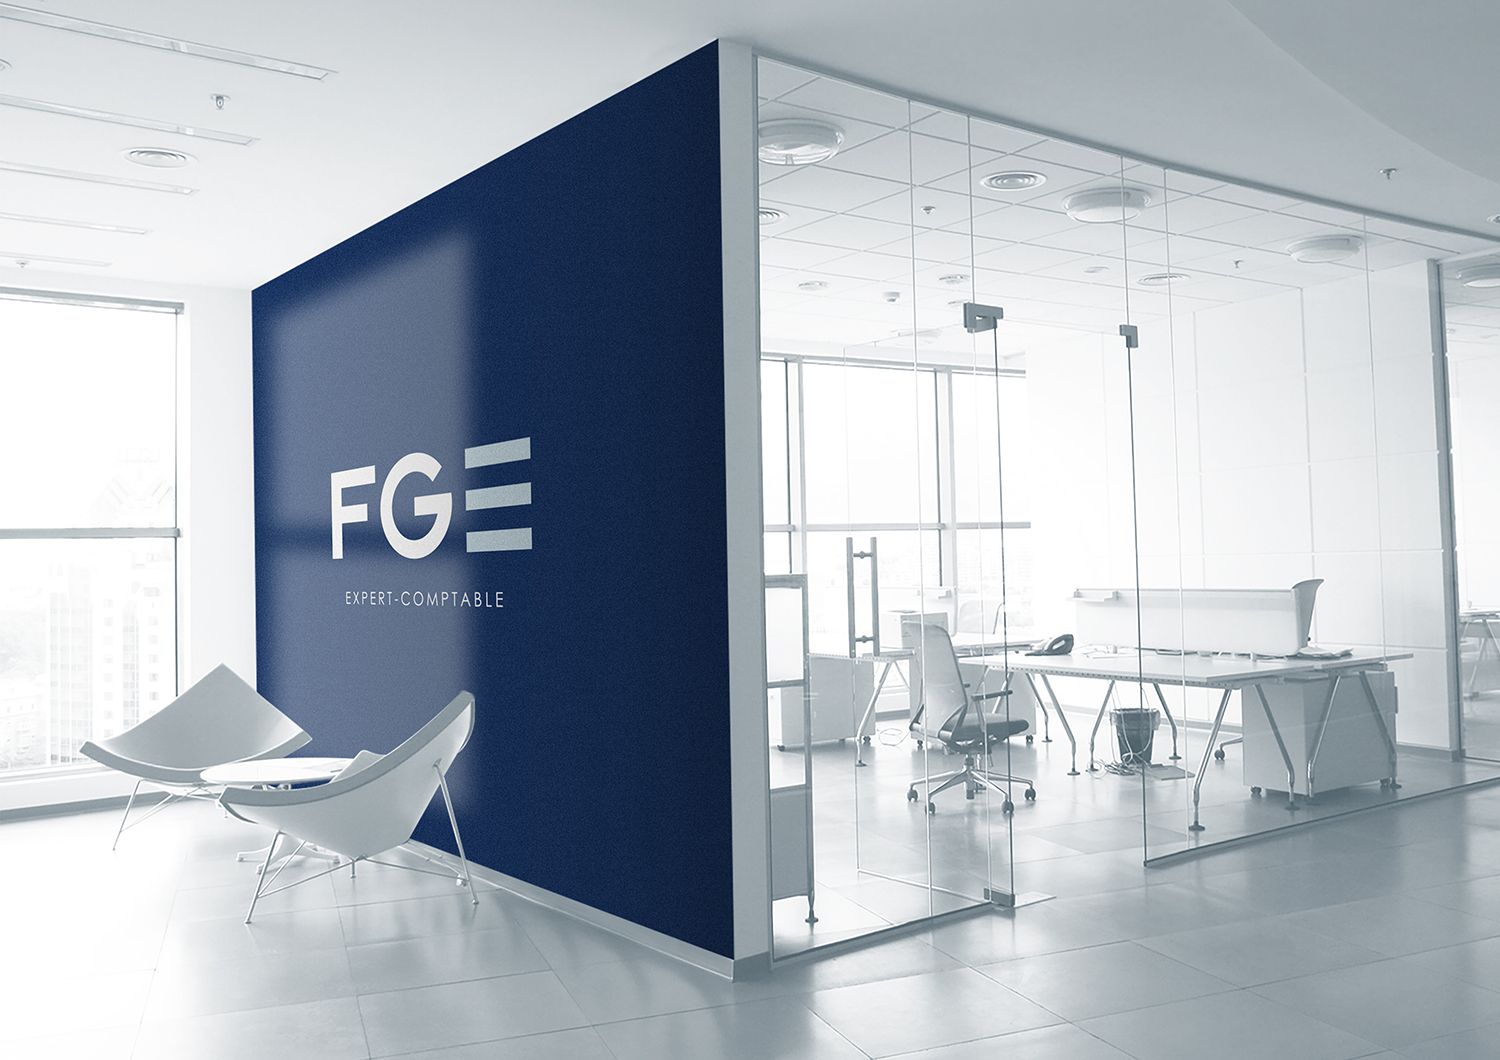 FGE - Bureau expert comptable - Création logo - Periskop